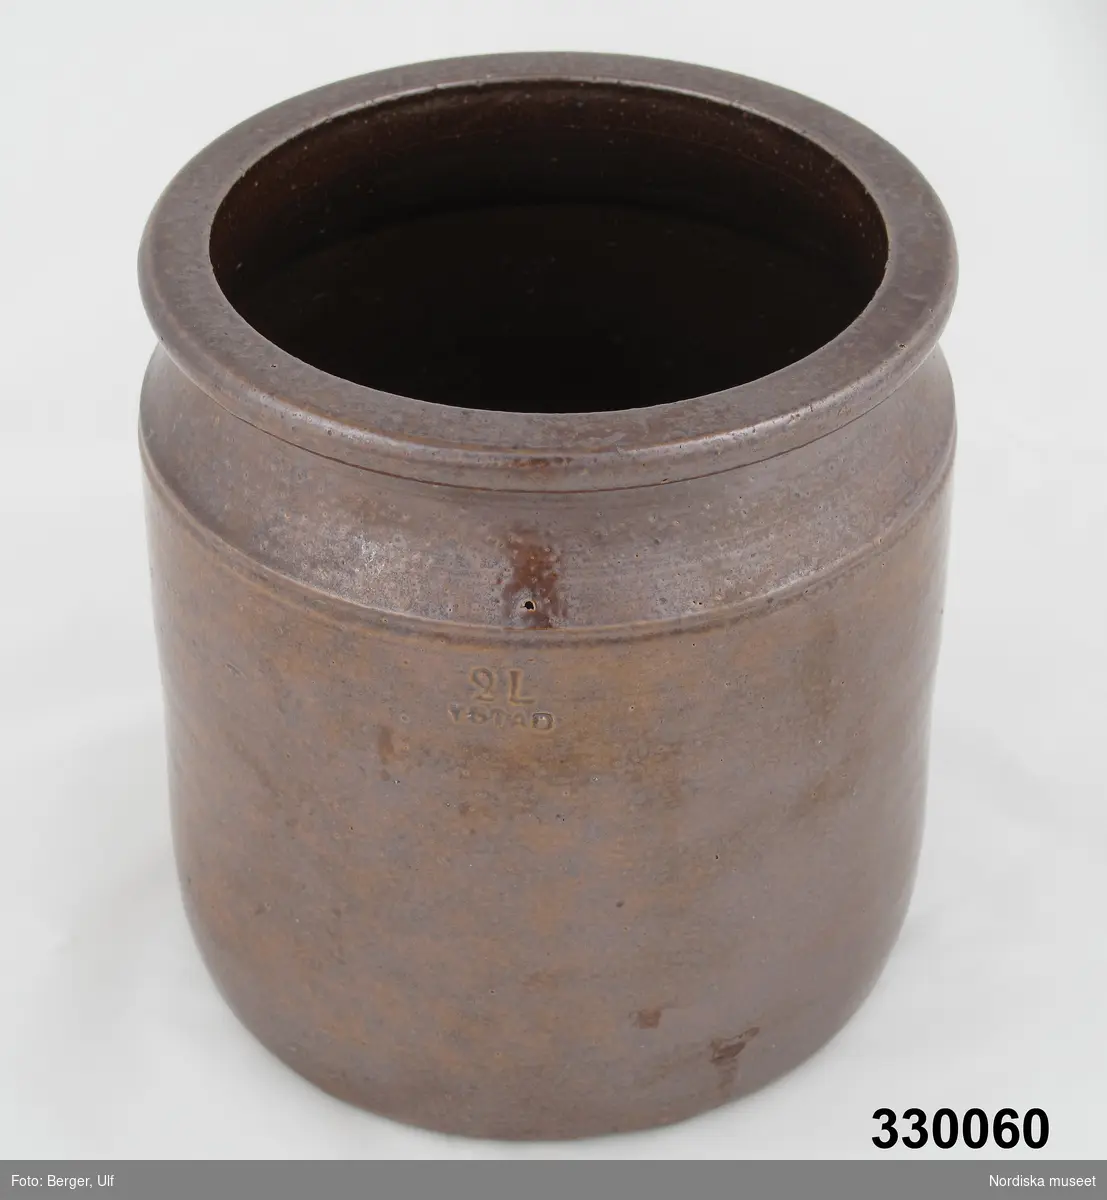 Hushållskärl i saltglaserad keramik, brun. Raka sidor med insvängd mynningen.  Stämpel på sidan "2L / YSTAD". Krukan rymmer 2 liter.
/Cecilia Wallquist 2010-03-12